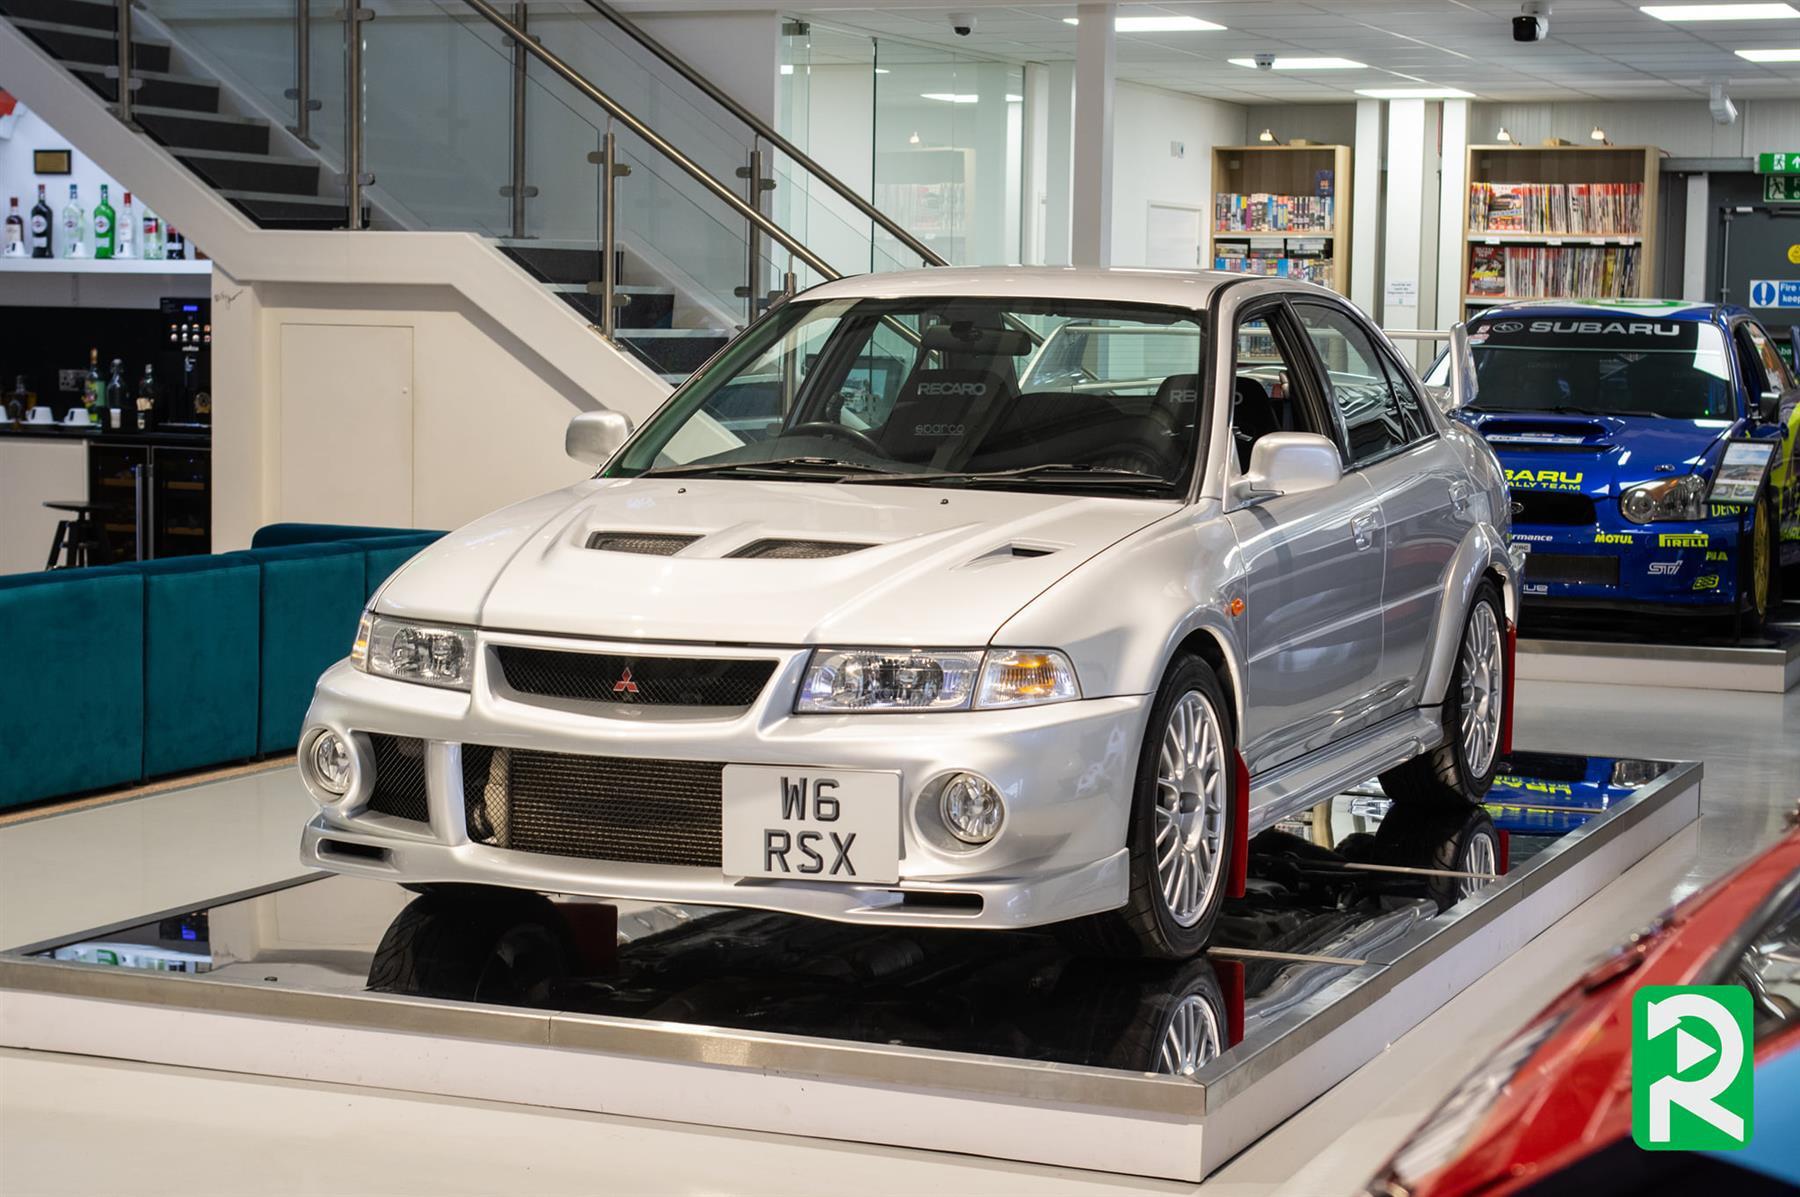 2000_Mitsubishi_Lancer_Evolution_VI_RSX_sale-0001